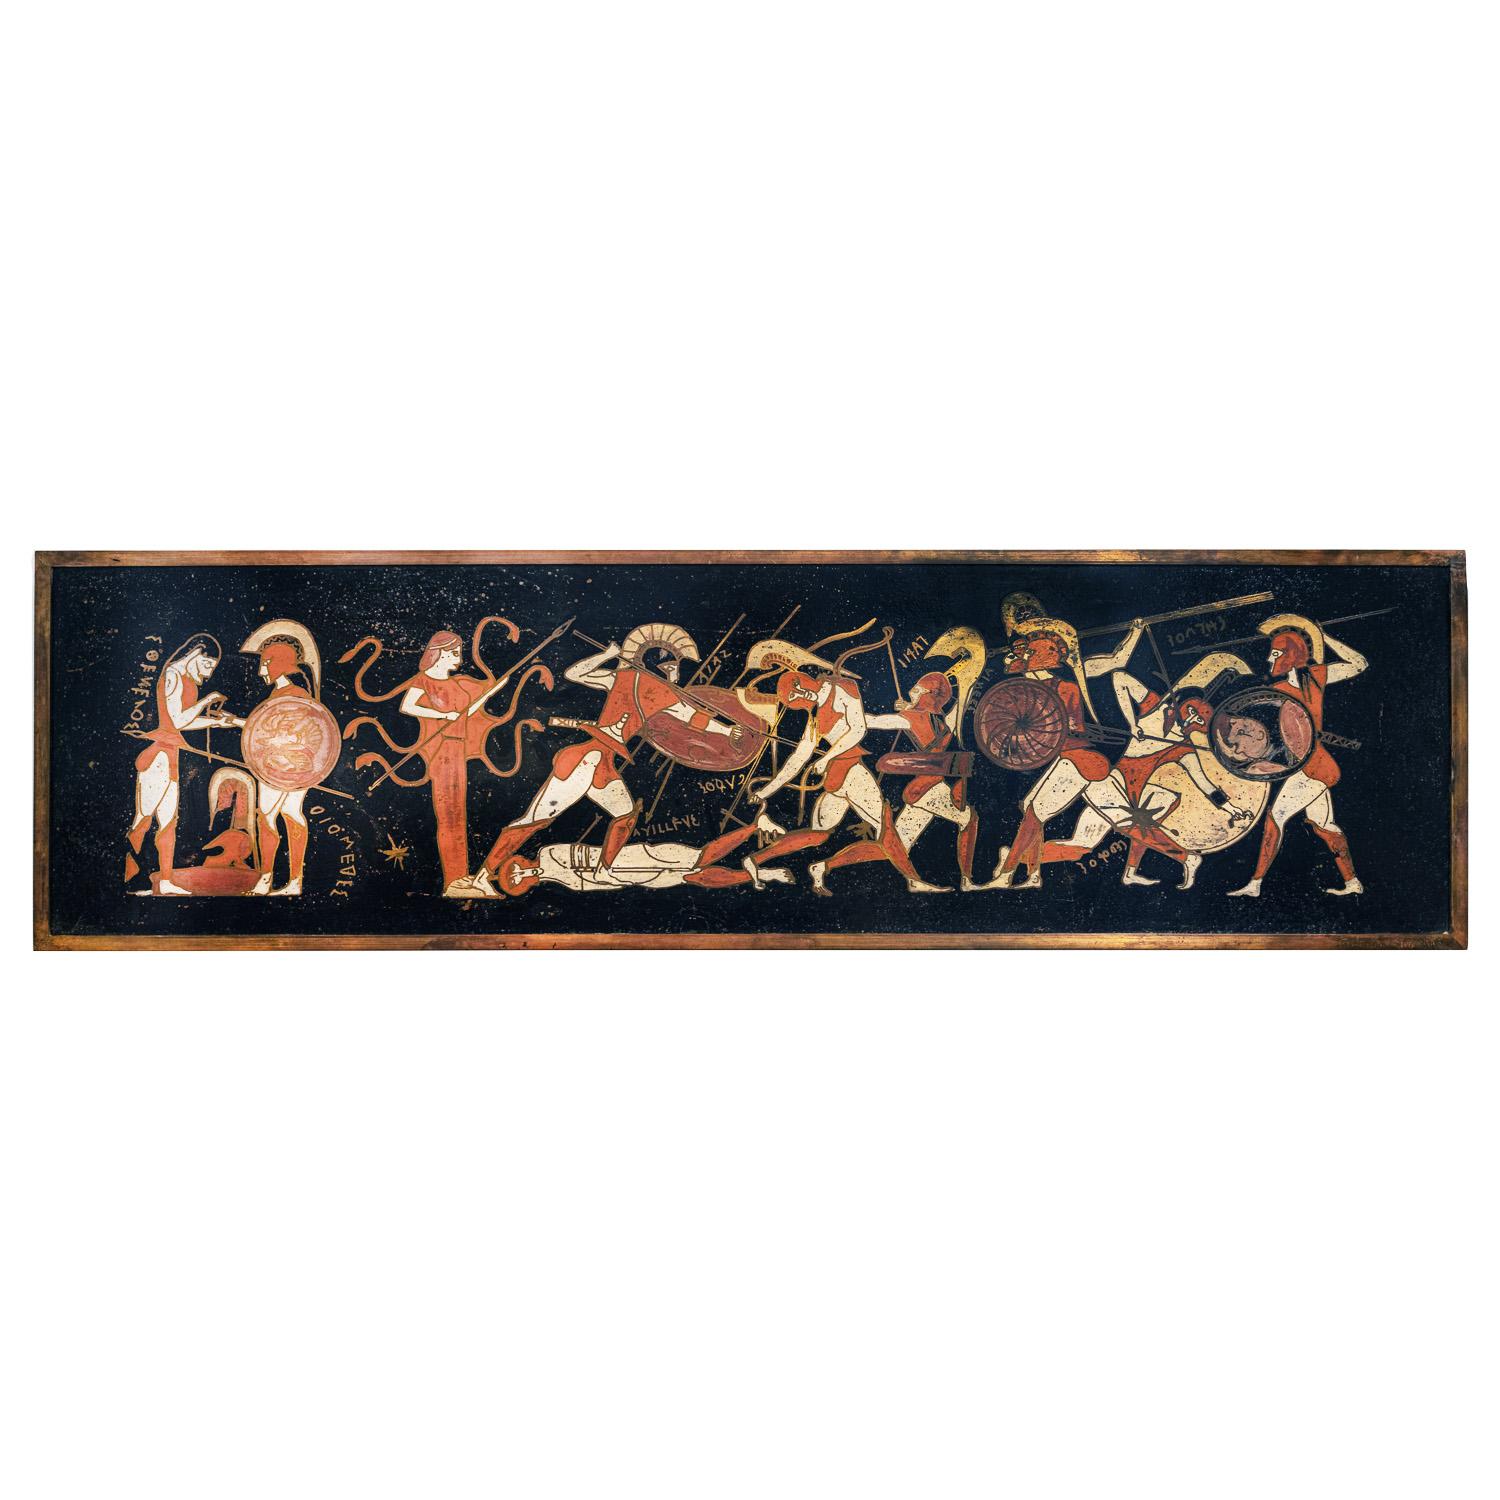 Rare peinture précoce d'une scène de mythologie grecque avec Méduse et des guerriers sur bronze patiné et gravé et étain avec émail cloisonné coloré par Philip & Kelvin LaVerne, Américain 1959 (signé à 2 endroits et daté).  Philip et Kelvin LaVerne